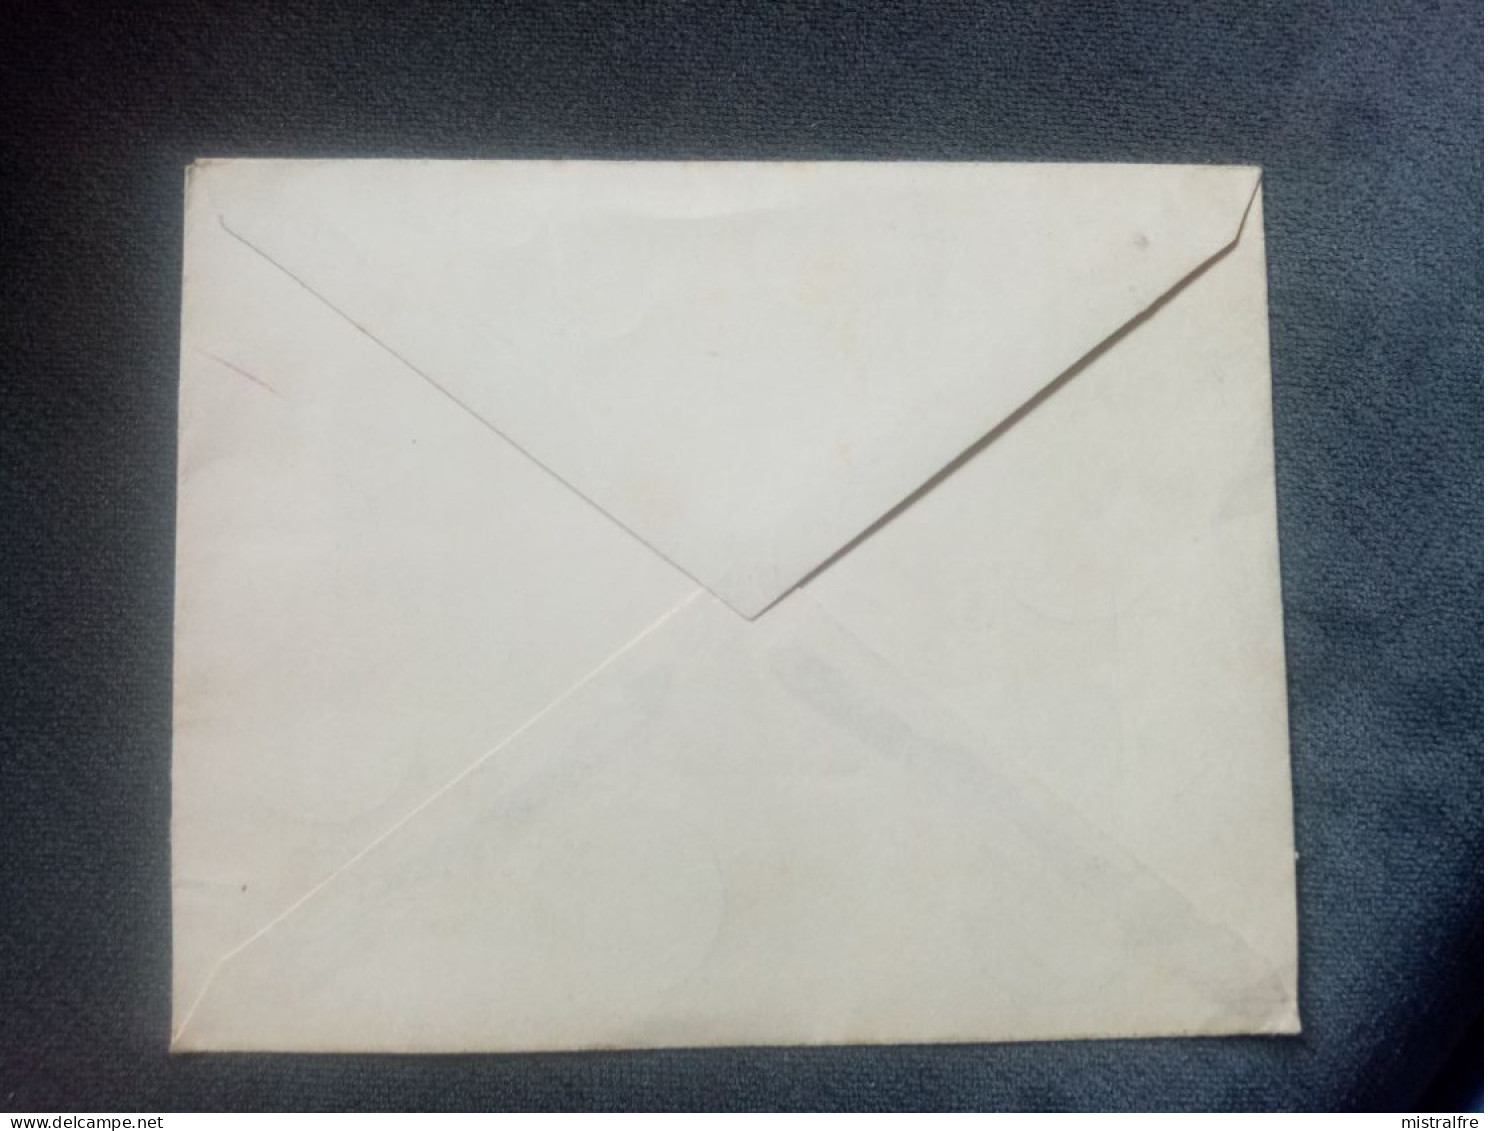 FRANCE.1949. Lettre " Centenaire Du Timbre Poste ".  Grand Palais PARIS. - Cartas & Documentos